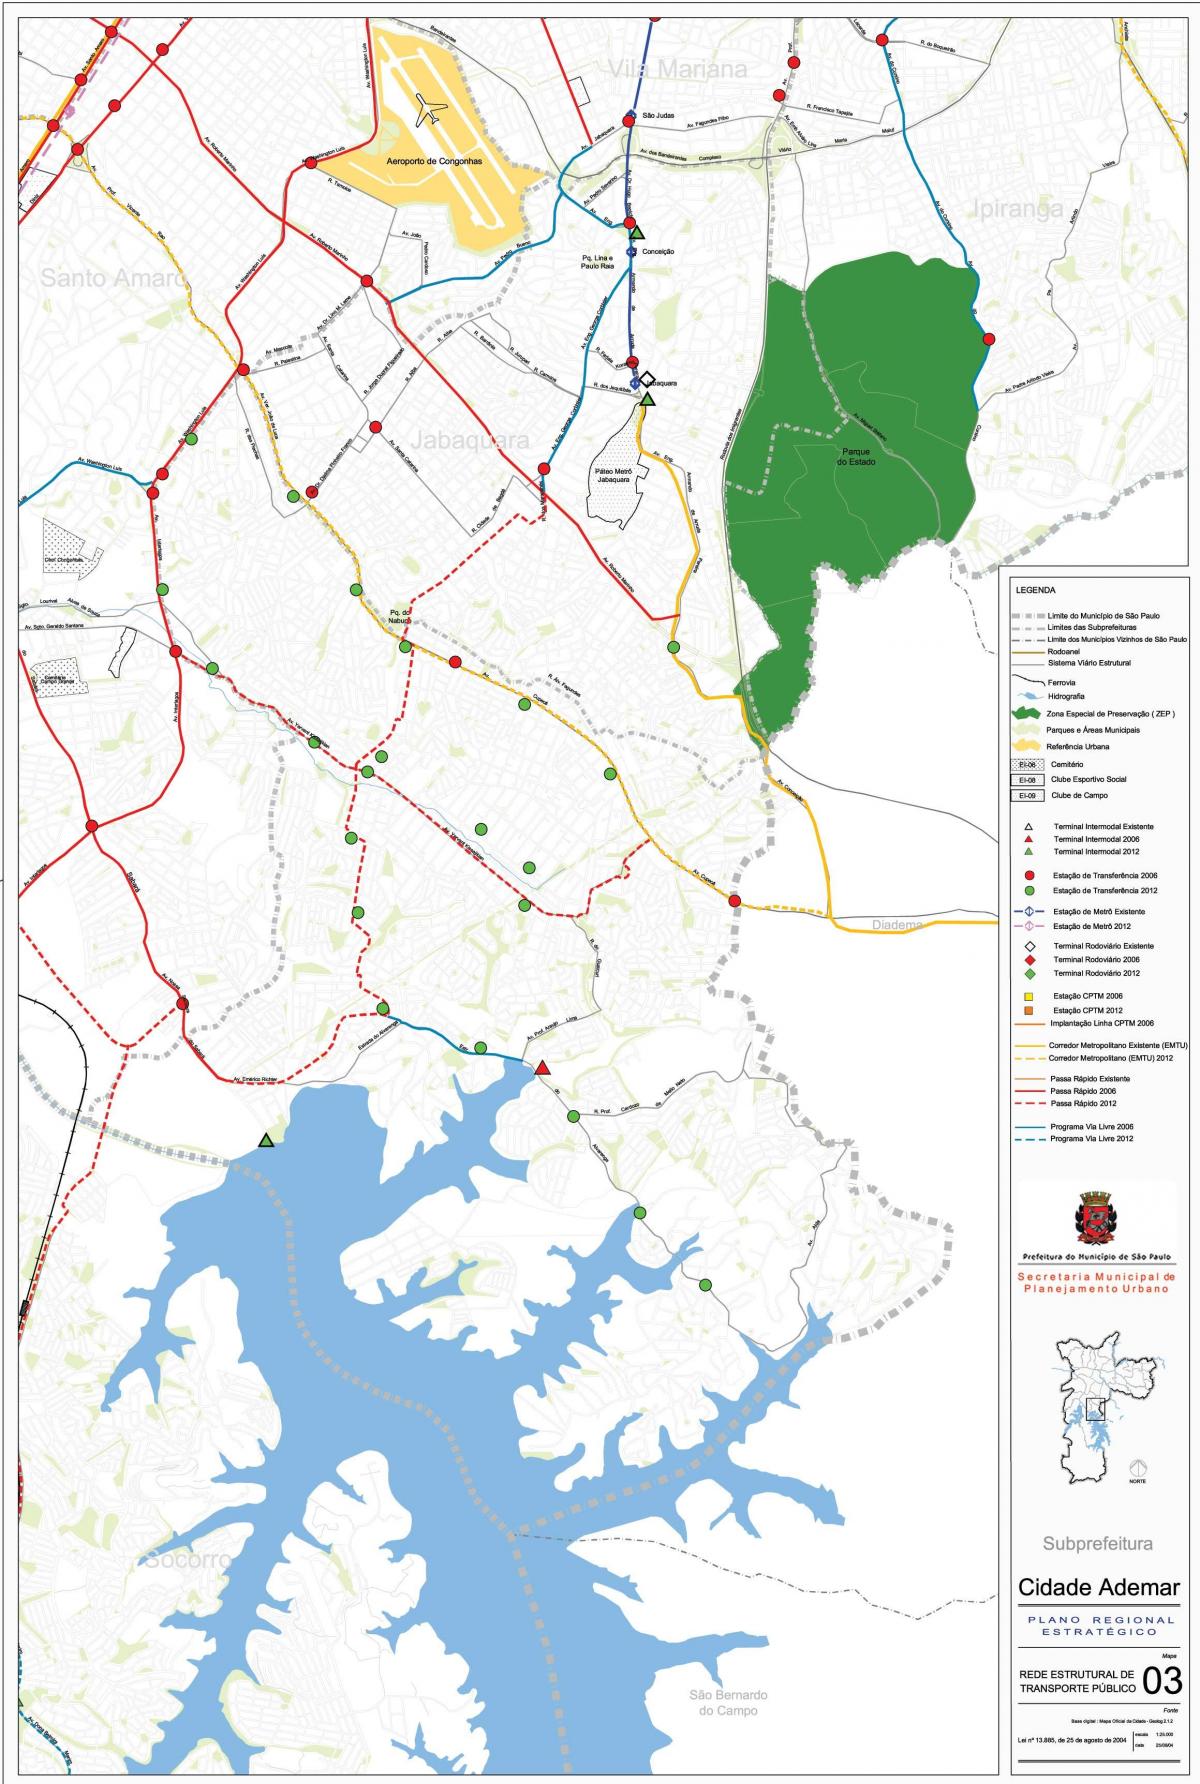 Mapa Cidade Ademar São Paulo - Verejnej dopravy